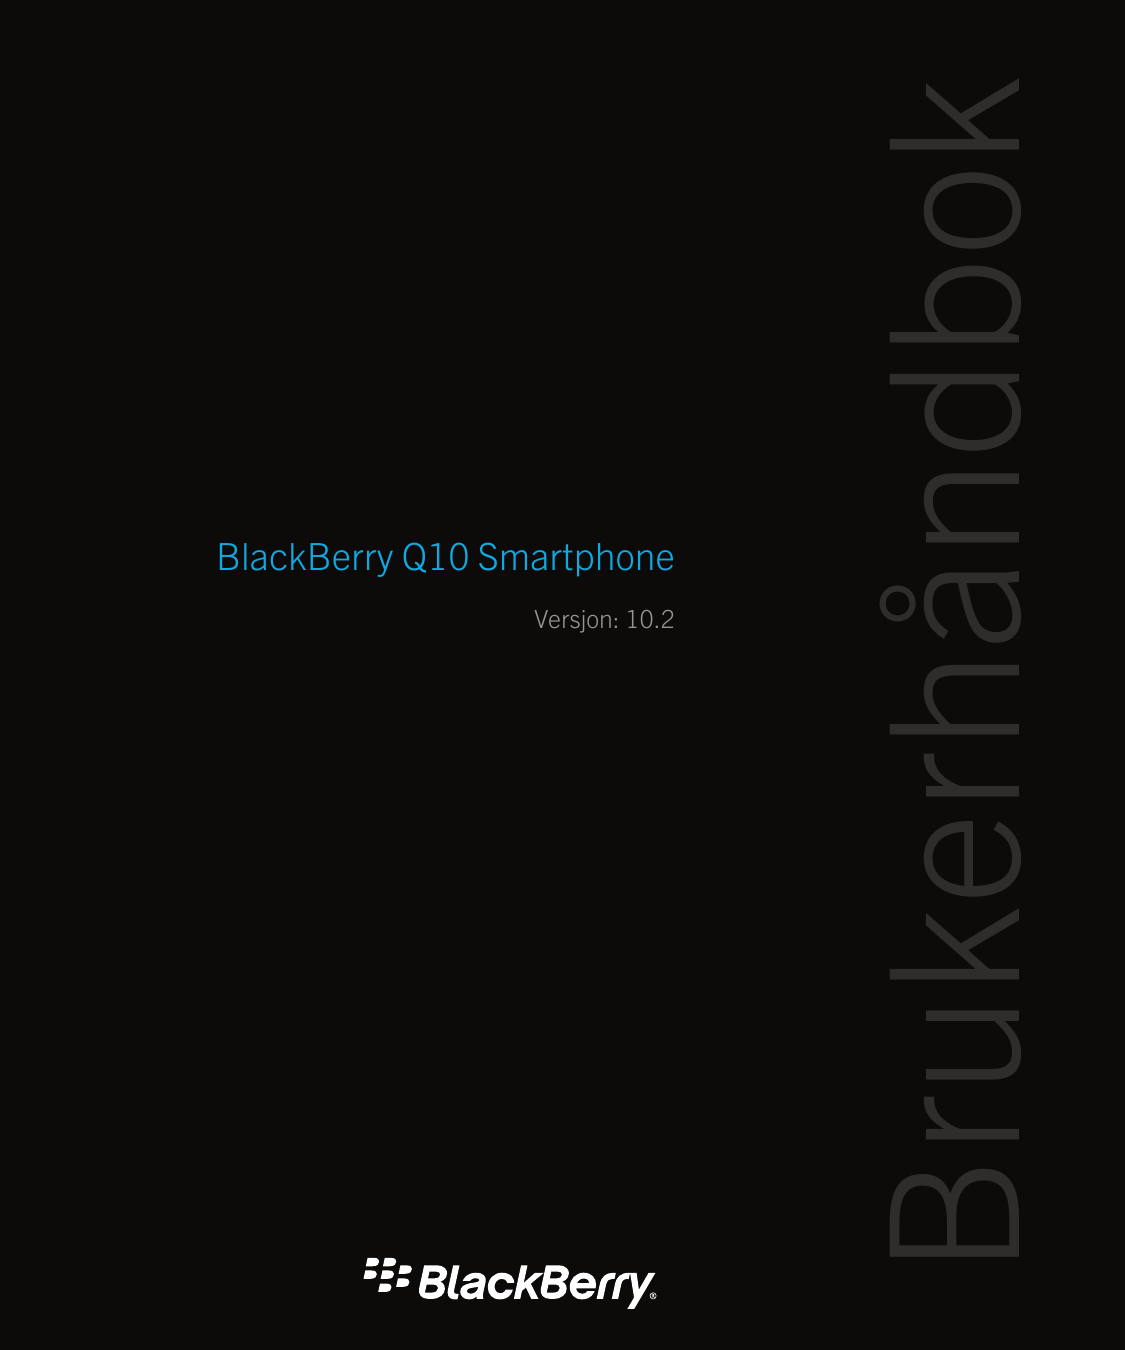 Versjon: 10.2BrukerhåndbokBlackBerry Q10 Smartphone